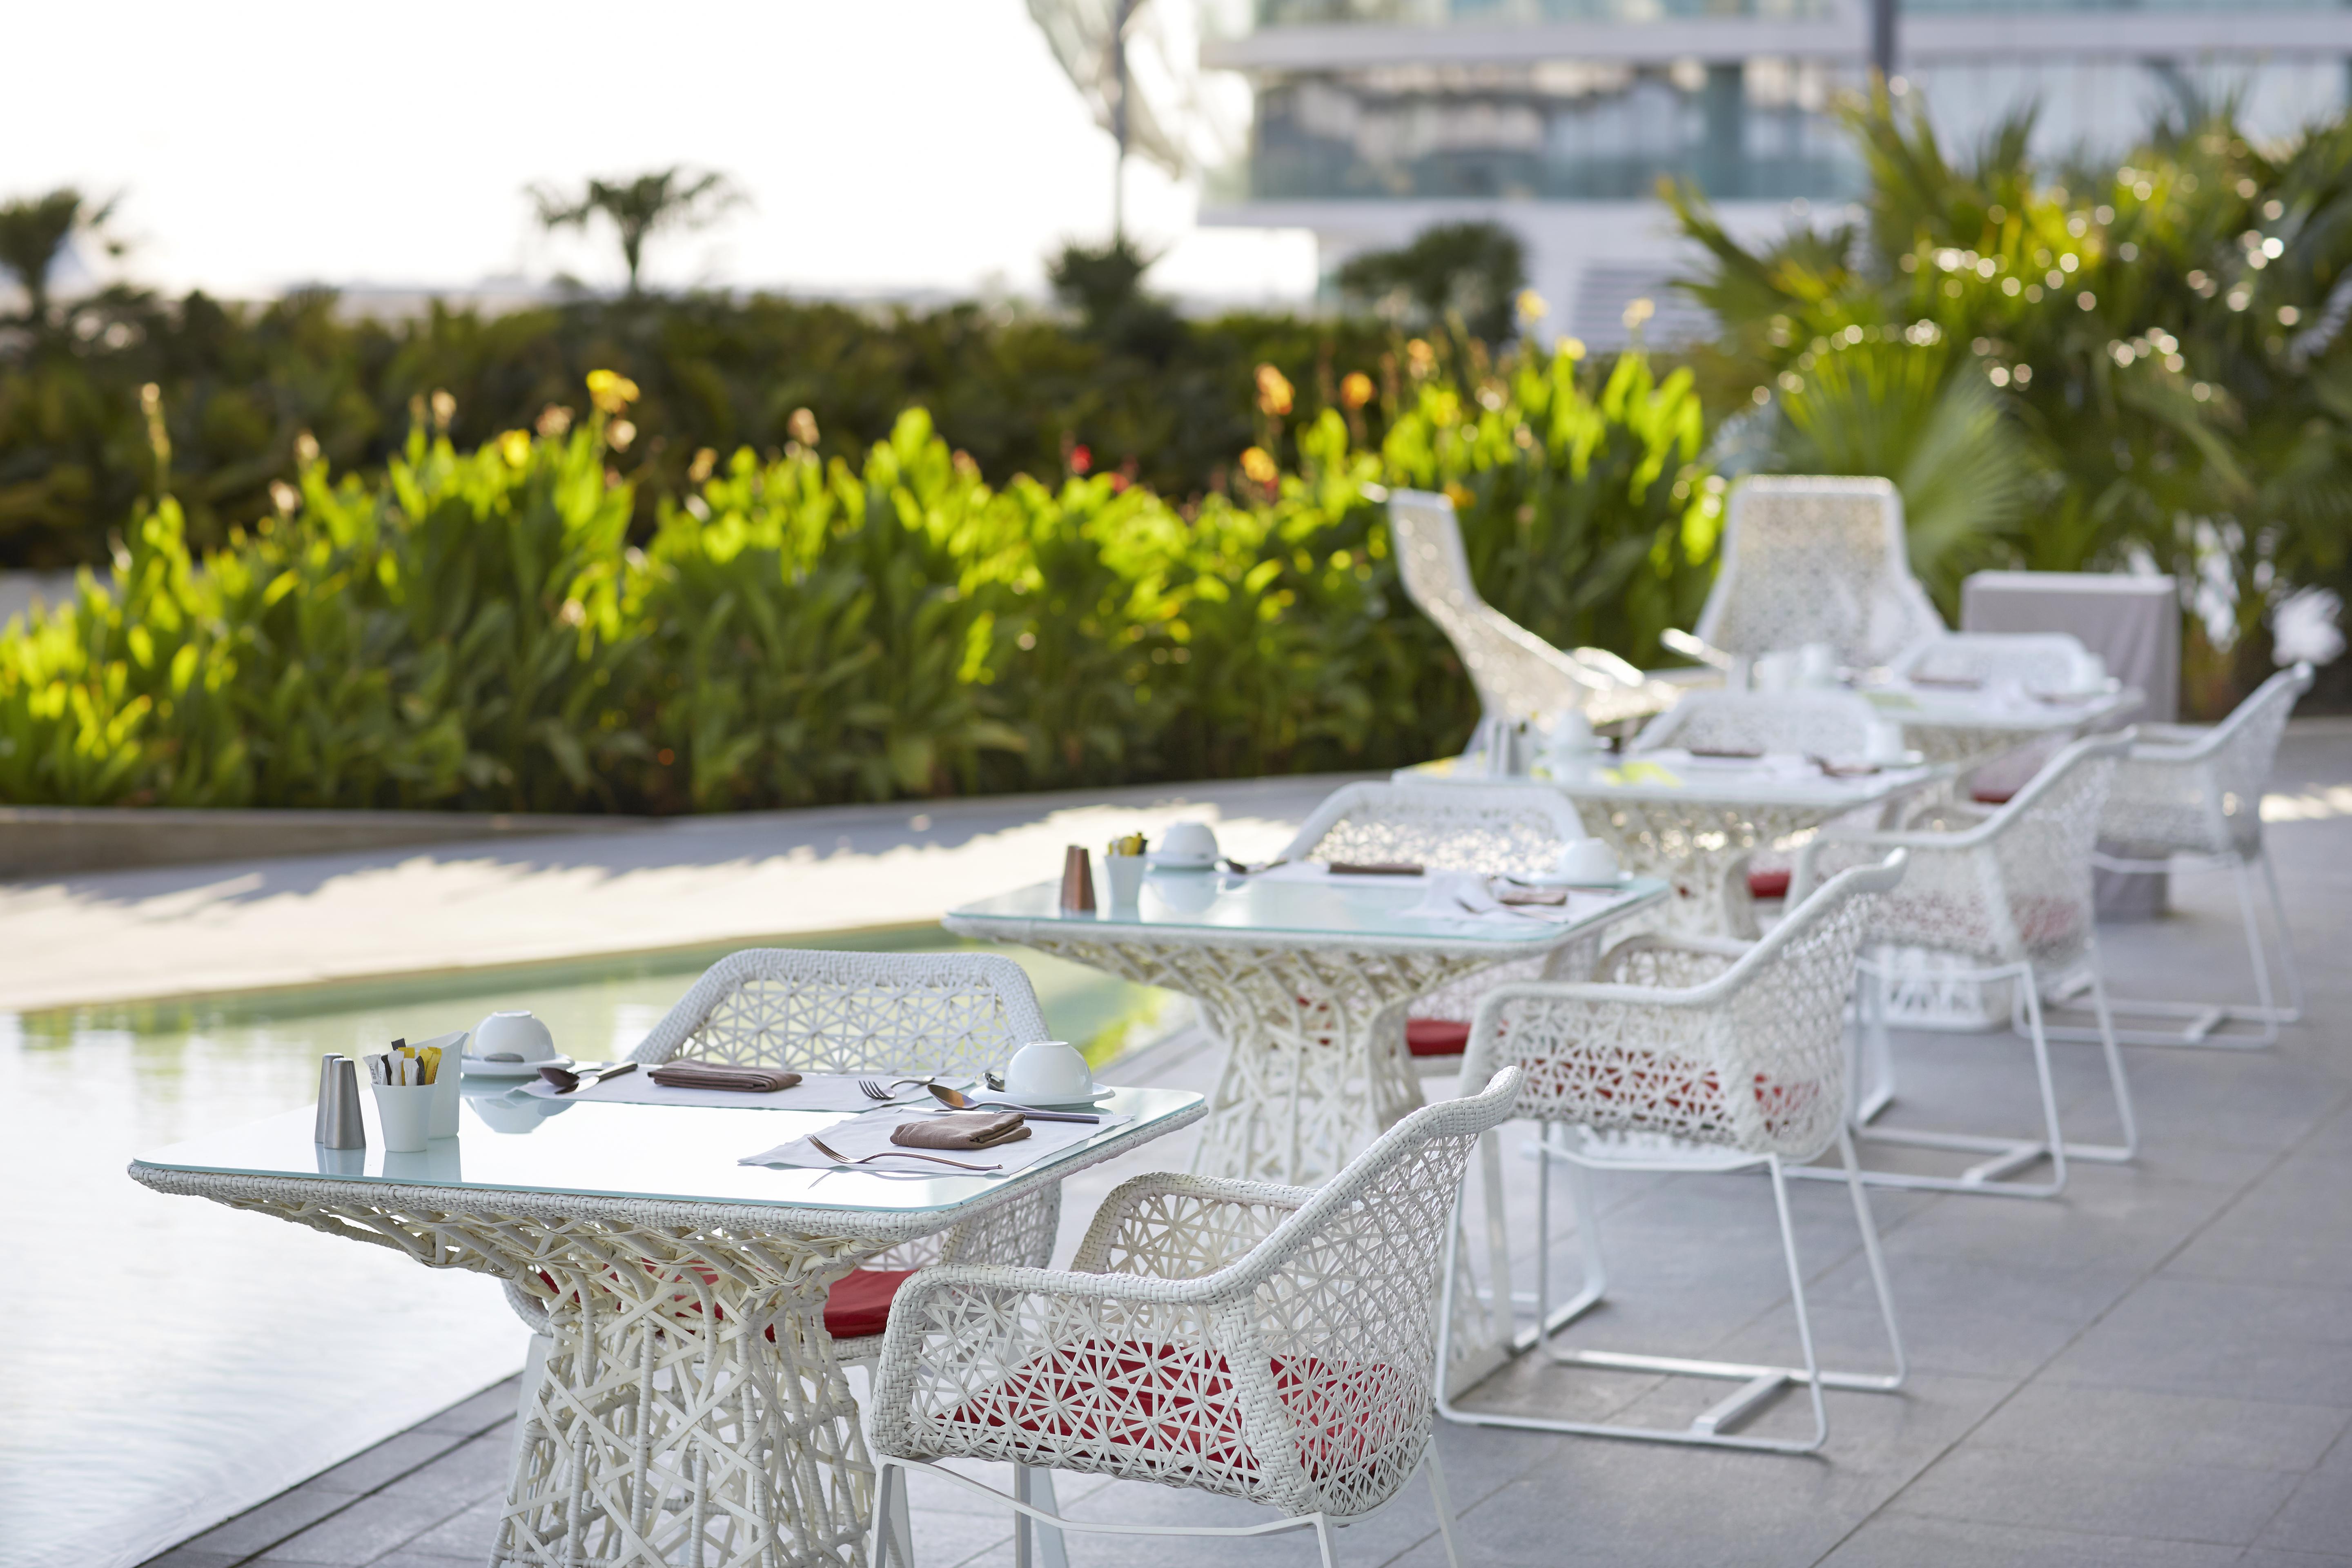 W Abu Dhabi - Yas Island Hotel Restaurant foto